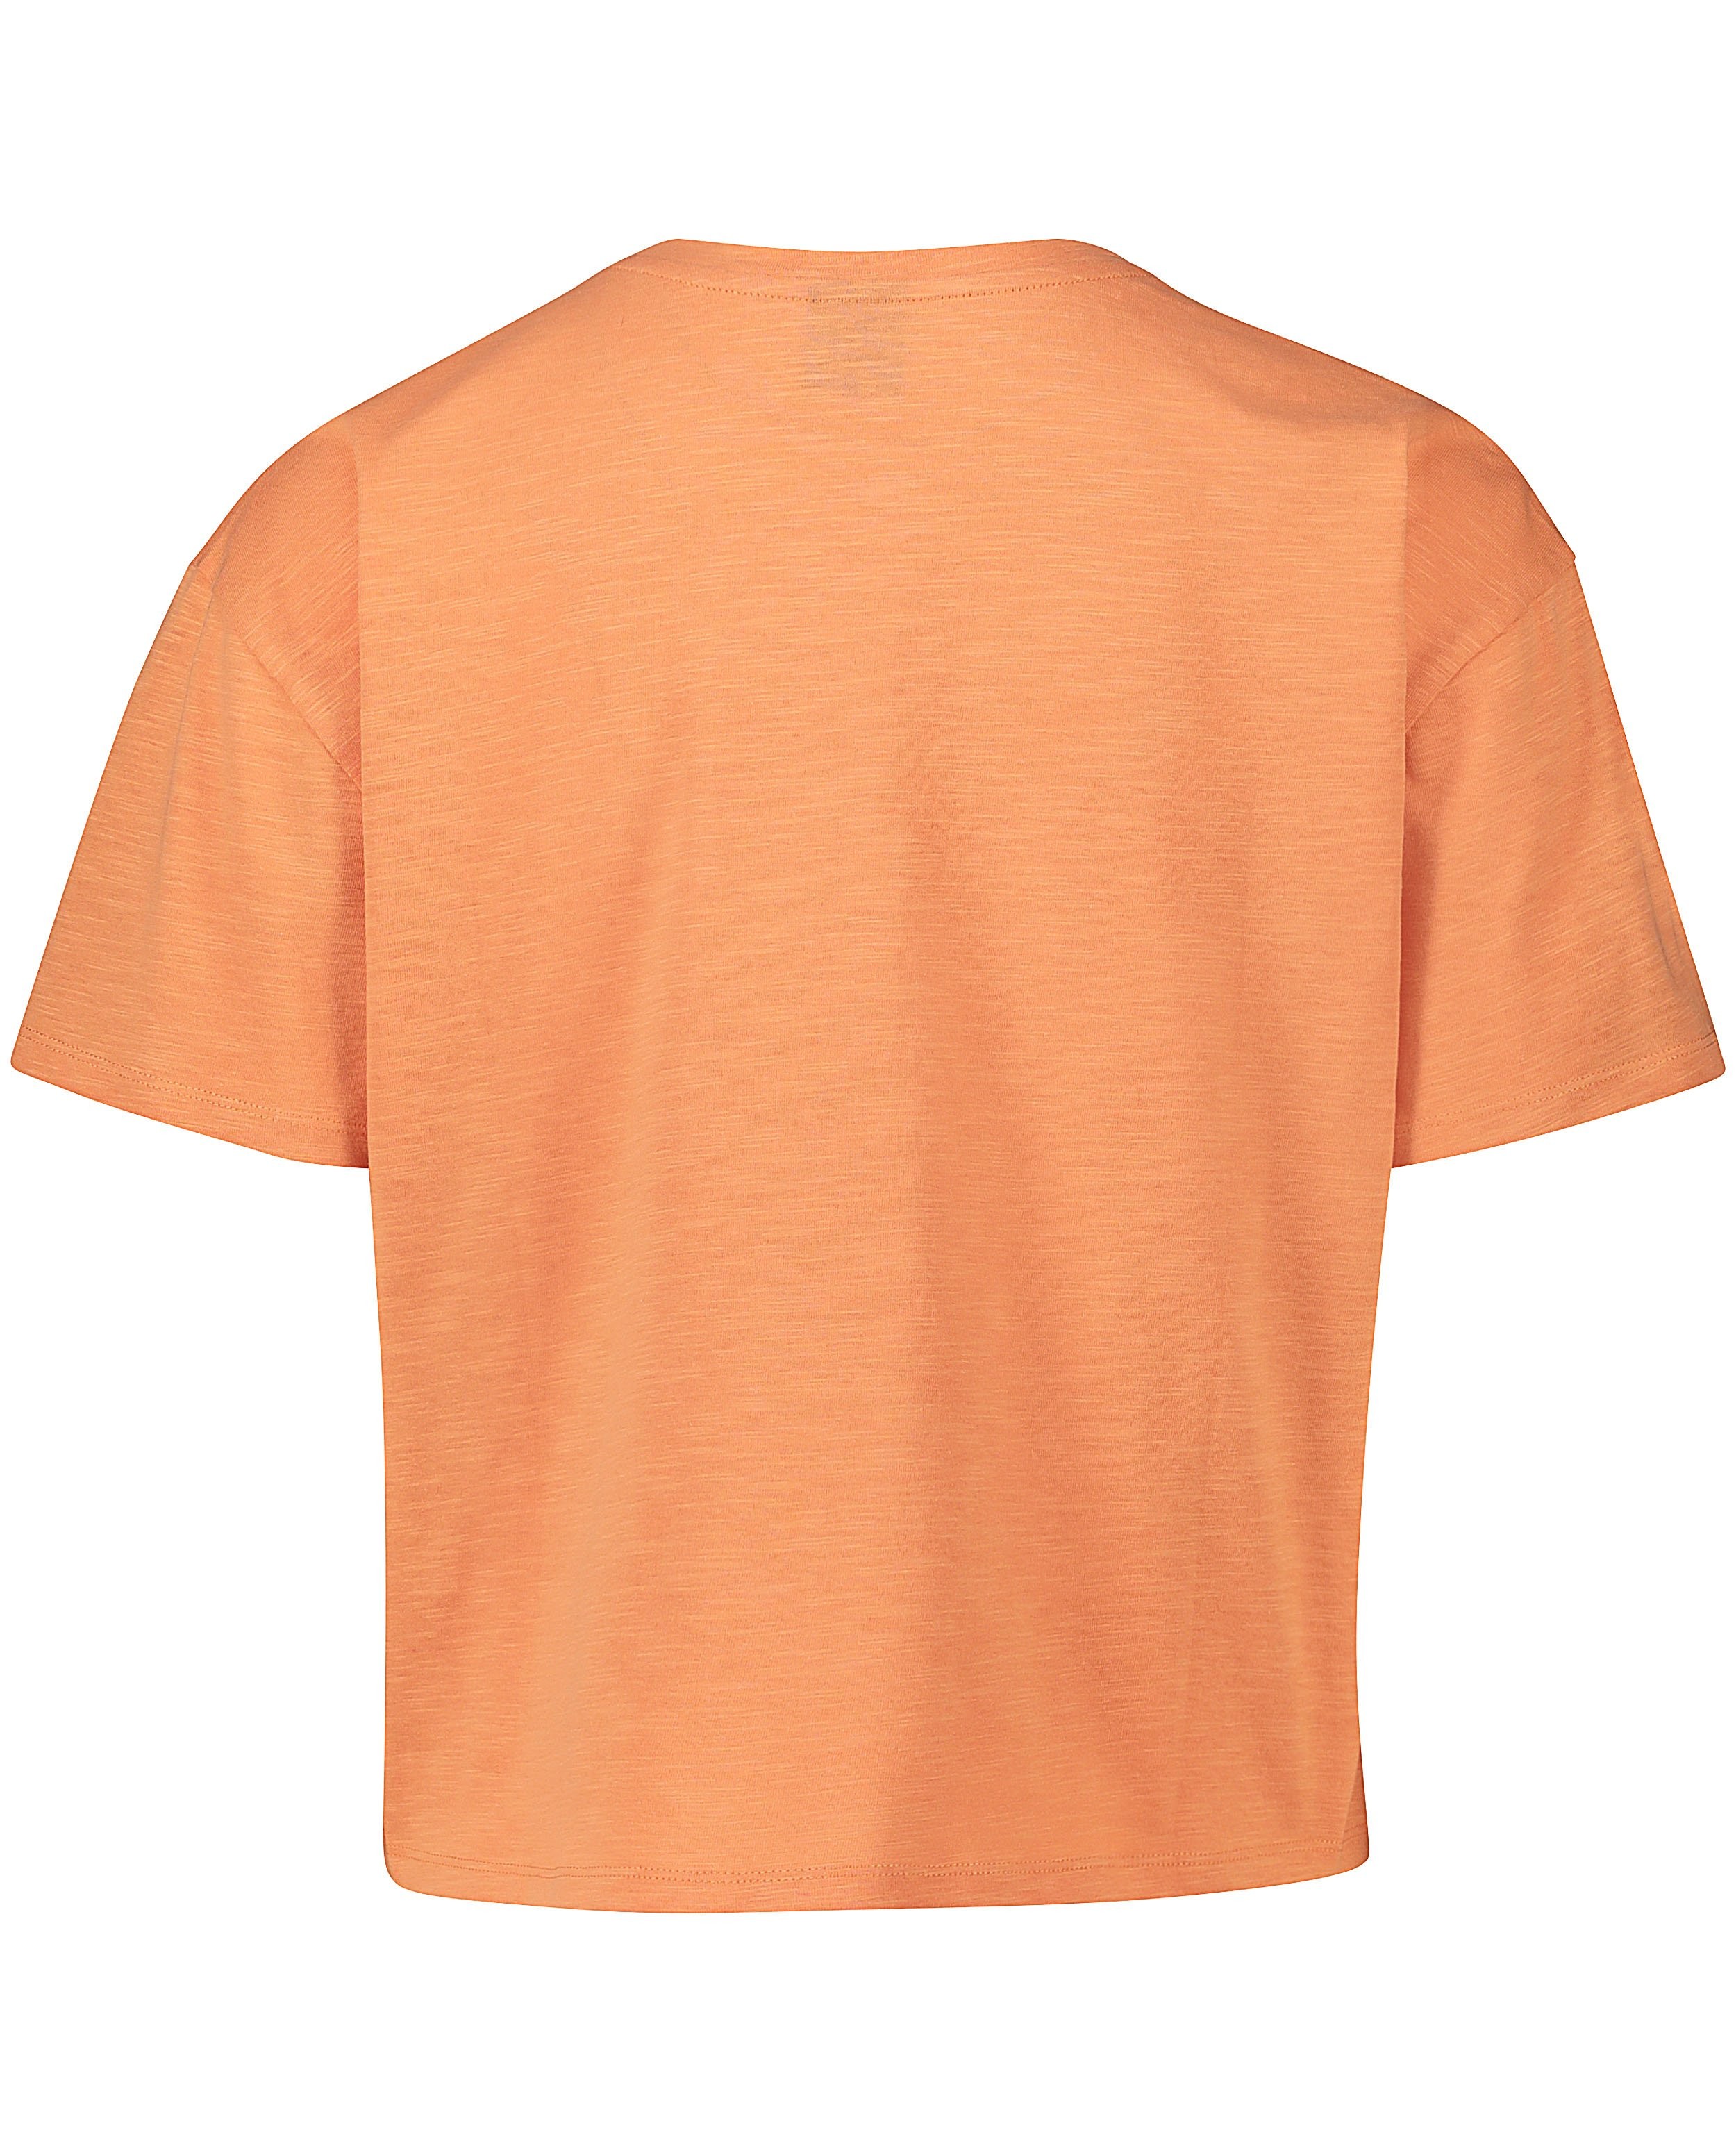 T-shirts - T-shirt orange clair à inscription